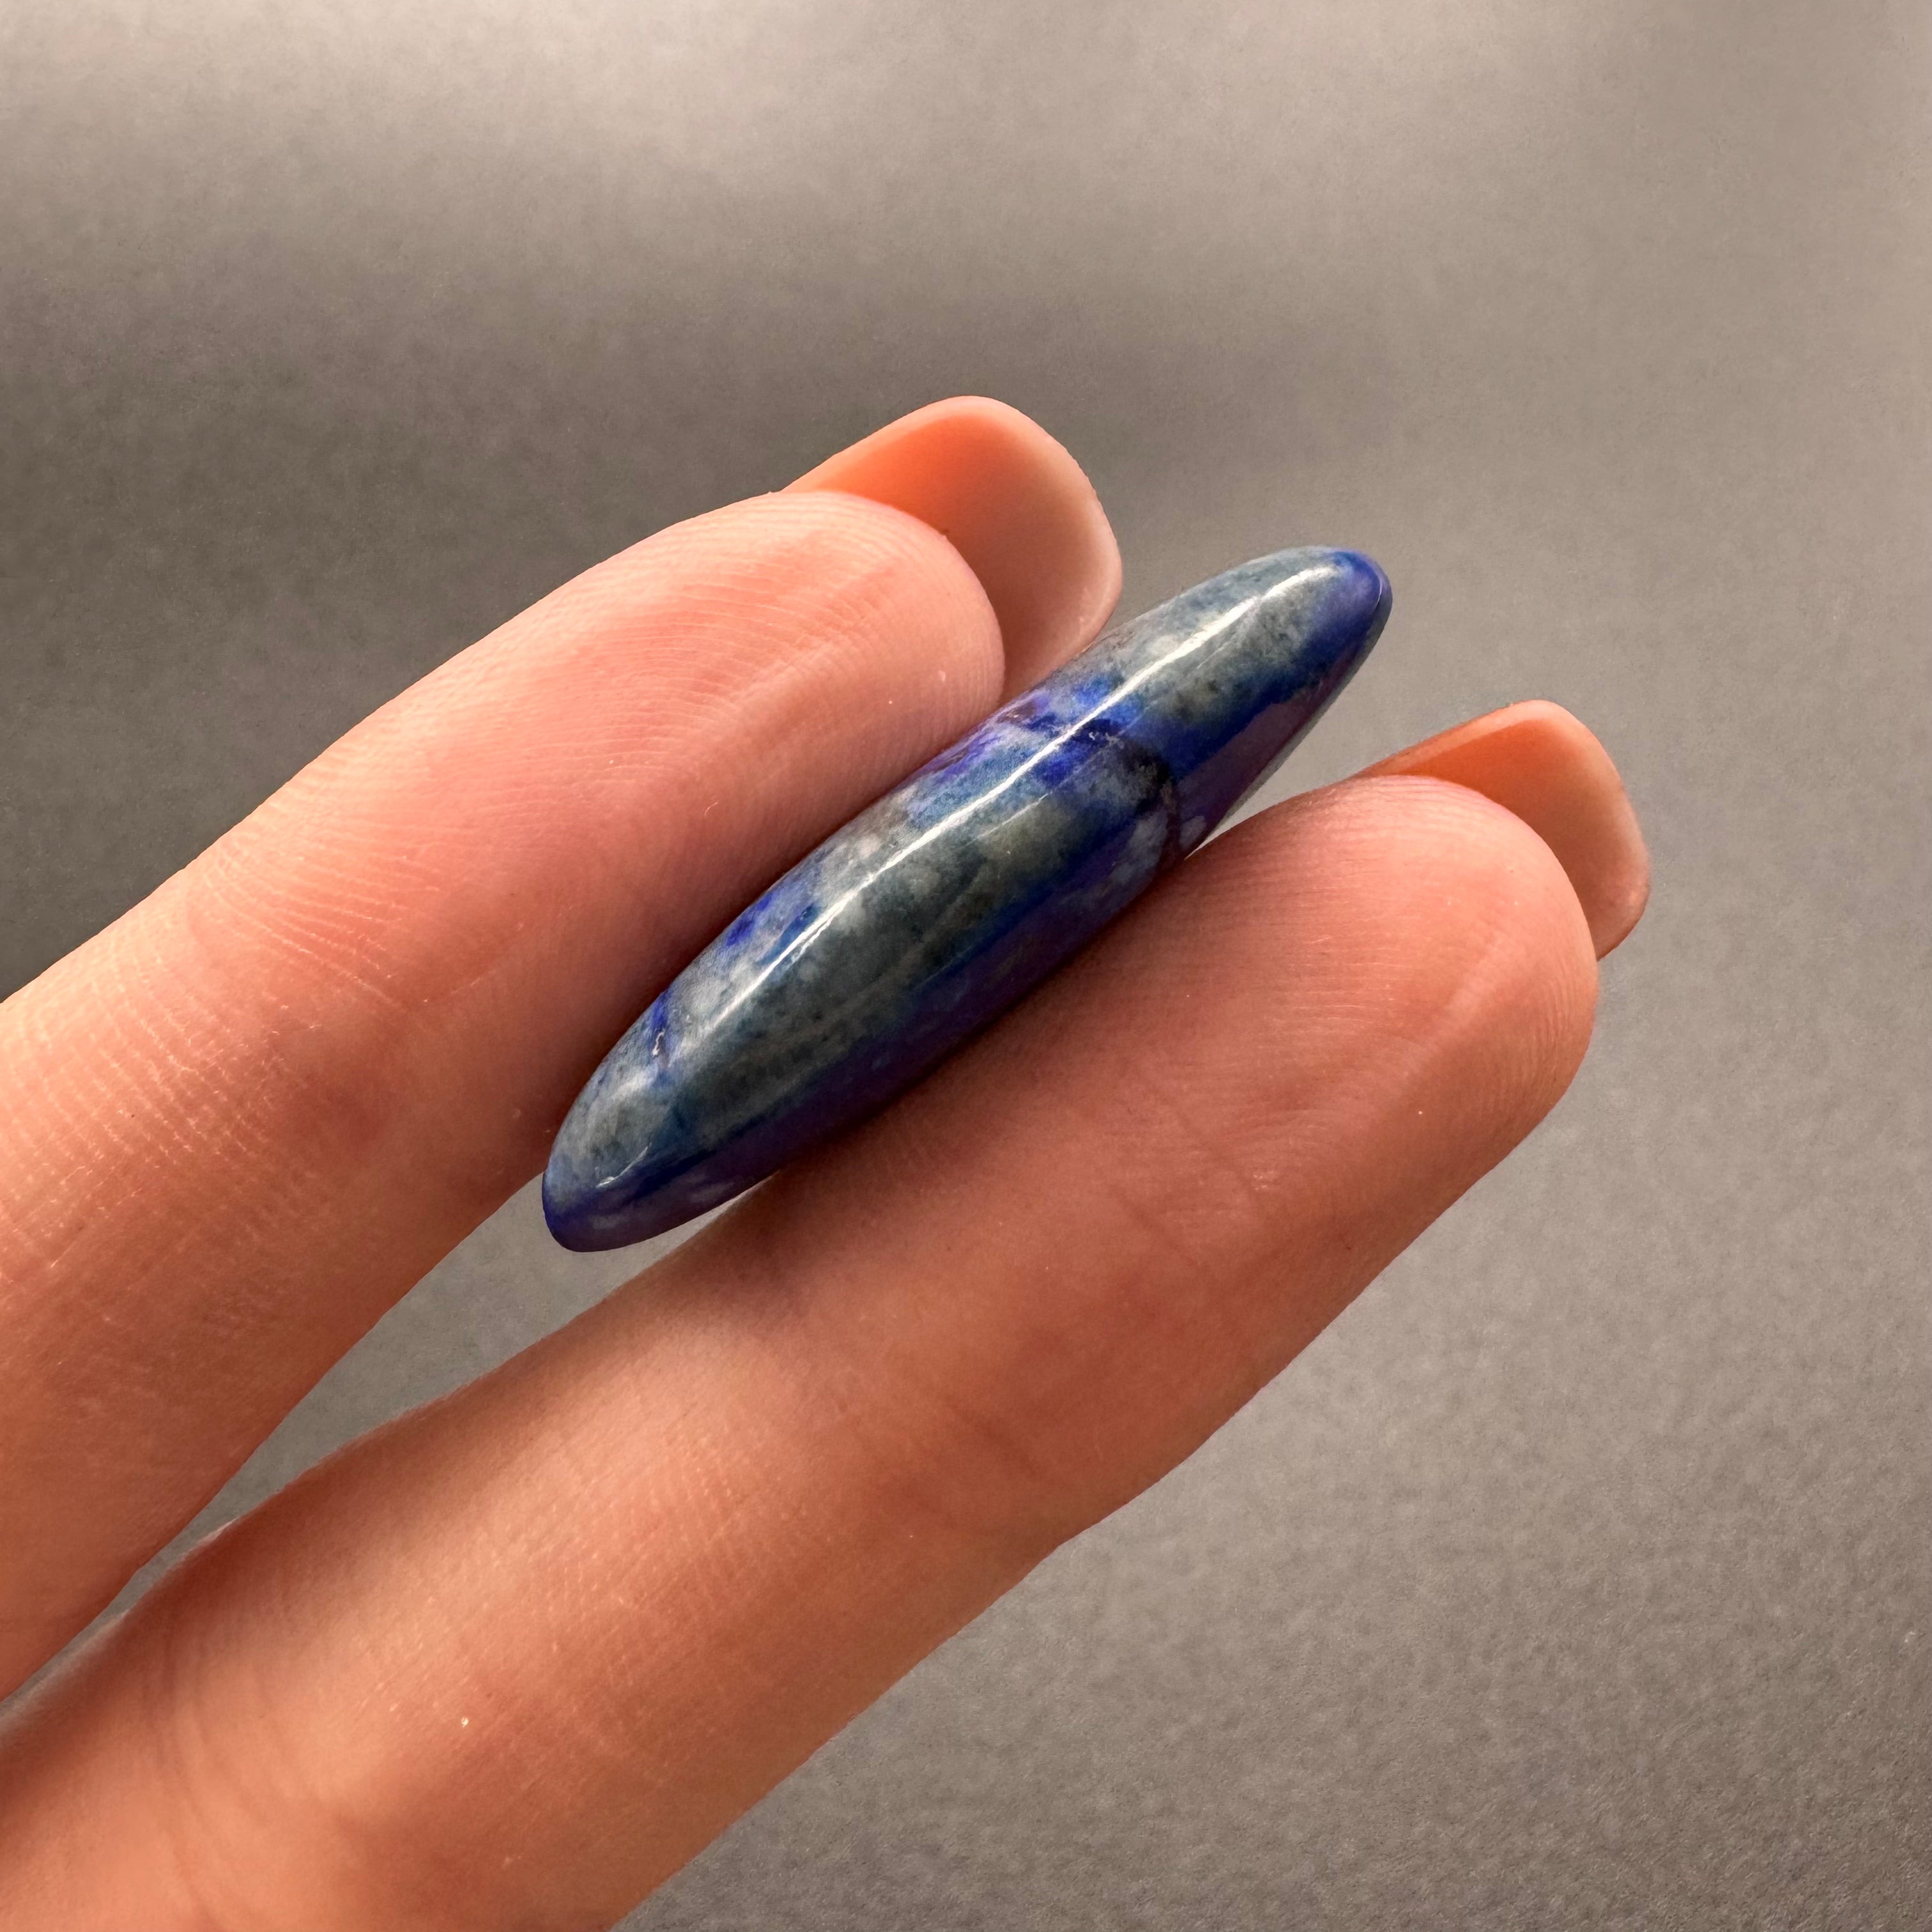 Lapis Lazuli Medicine Piece - 165